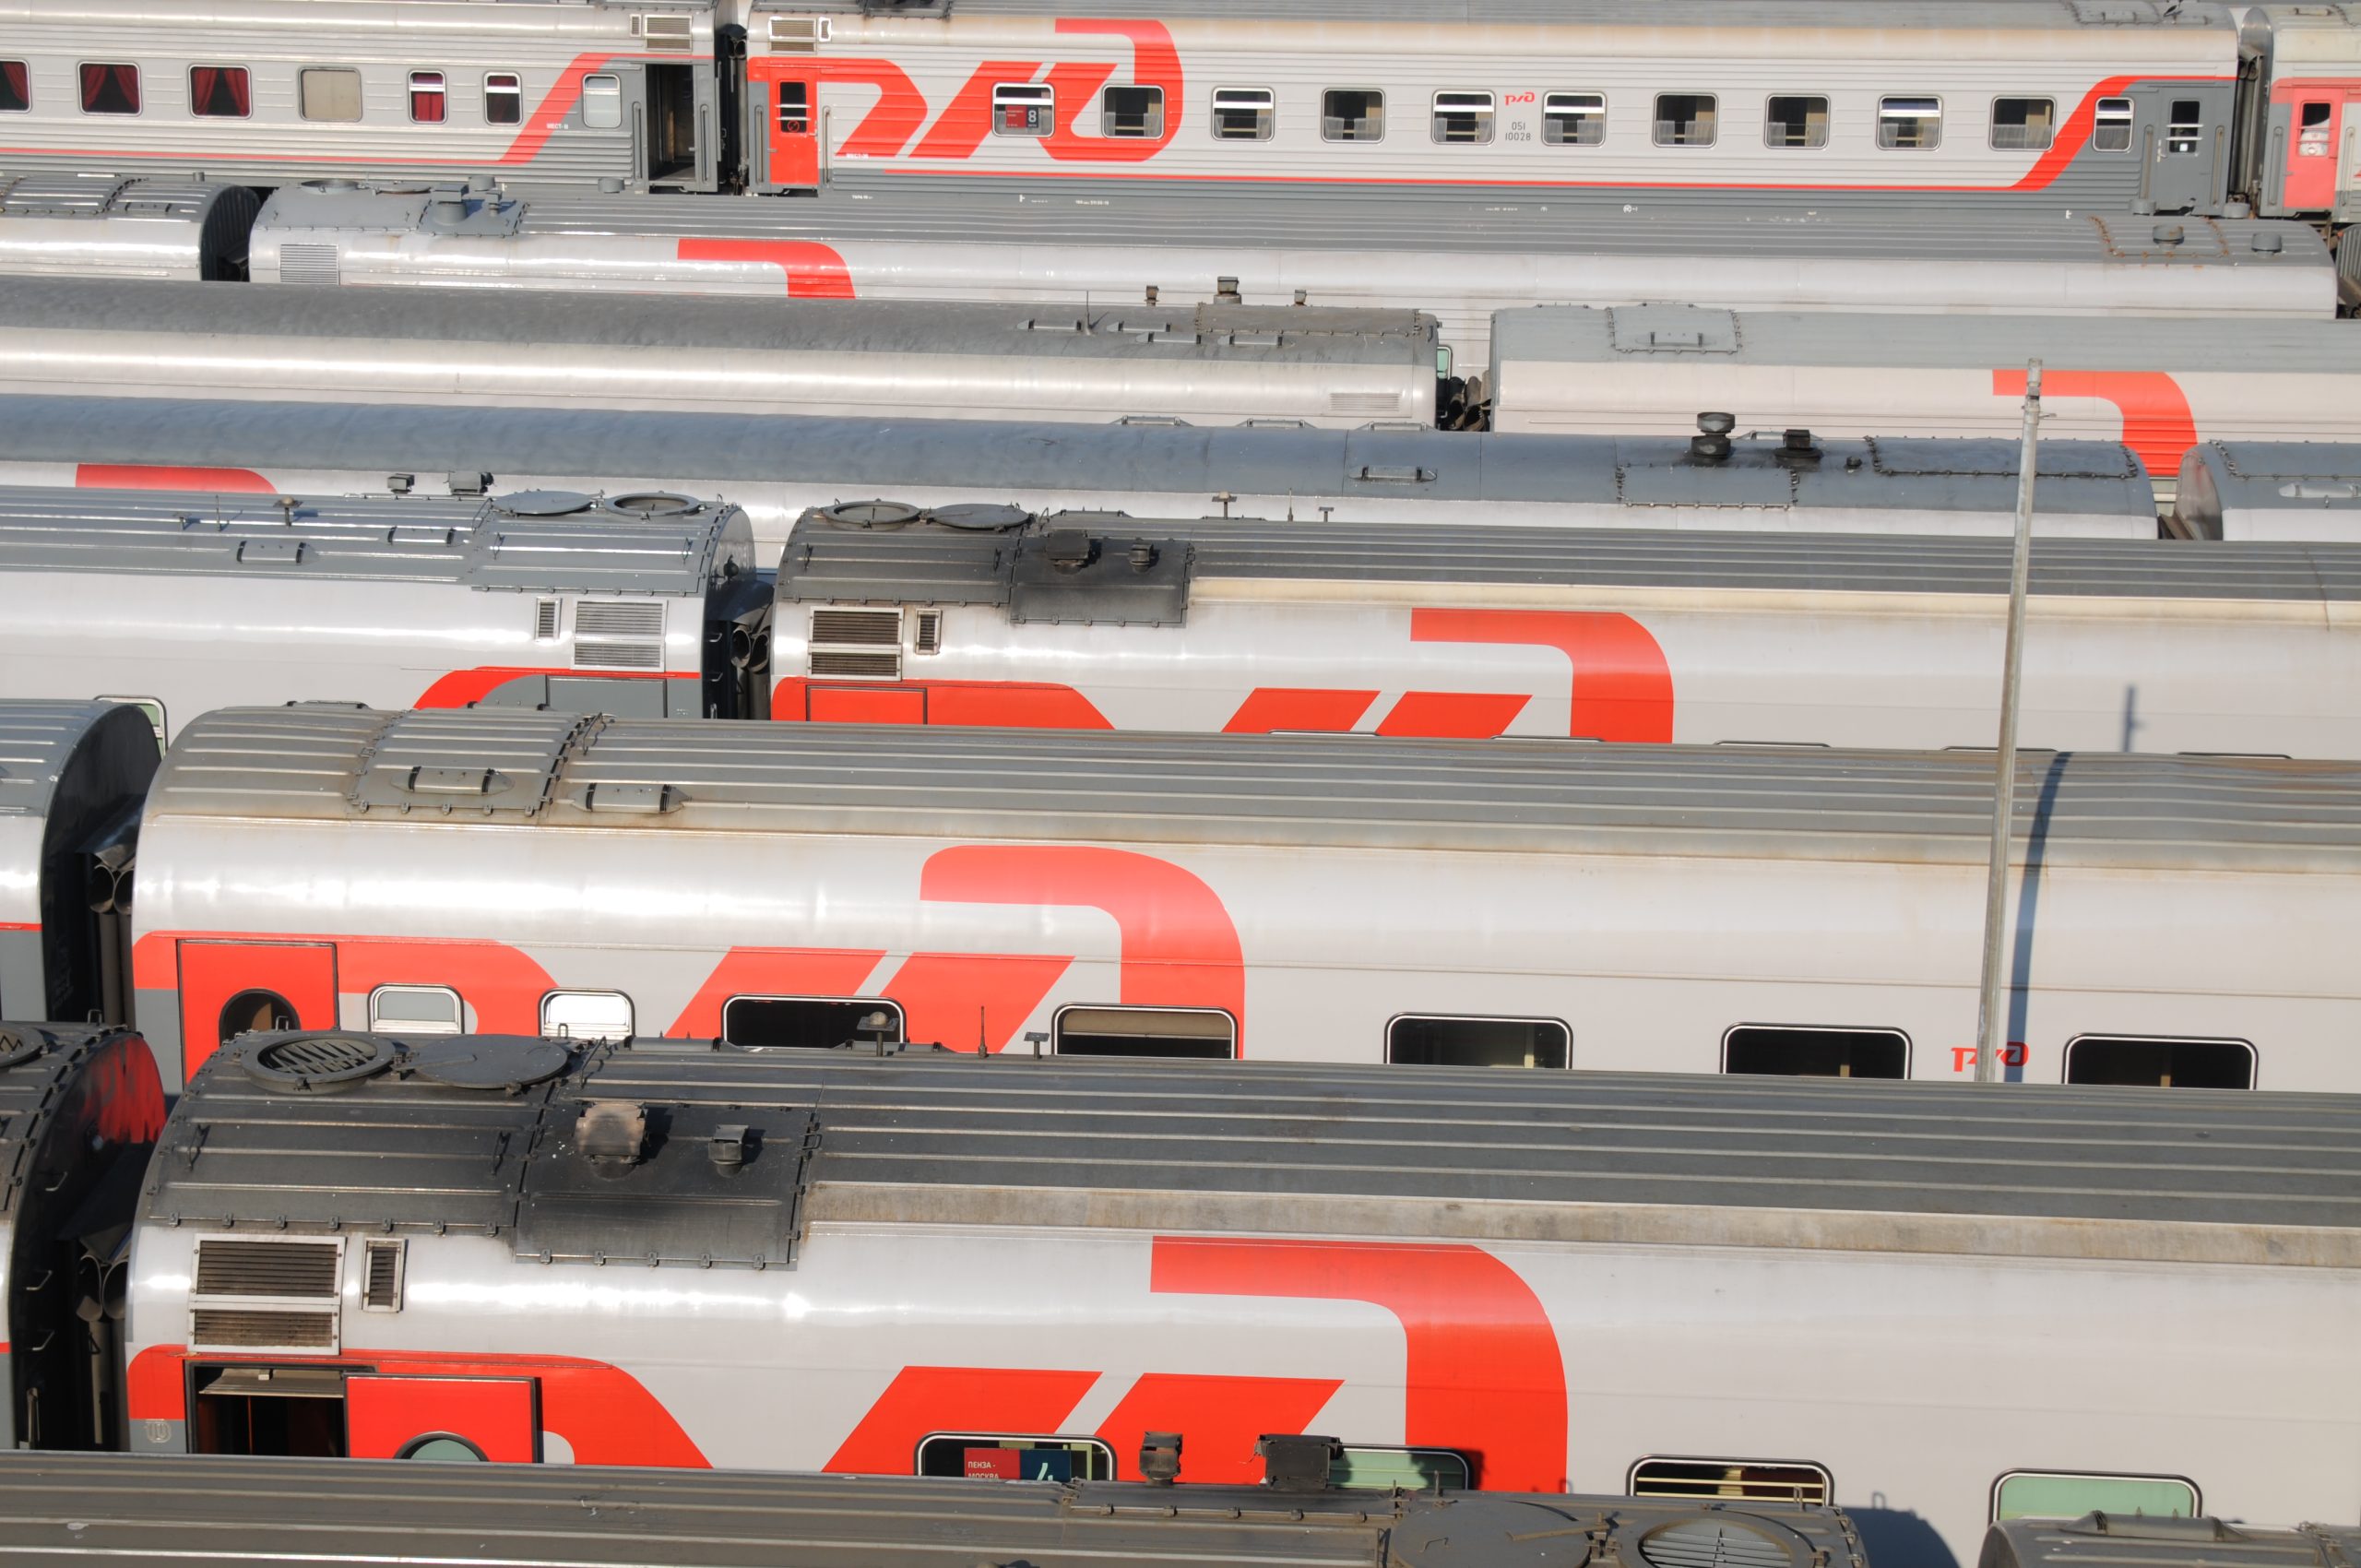 Робота для расцепки железнодорожных вагонов поездов создадут в столичном регионе. Фото: Светлана Колоскова, «Вечерняя Москва»